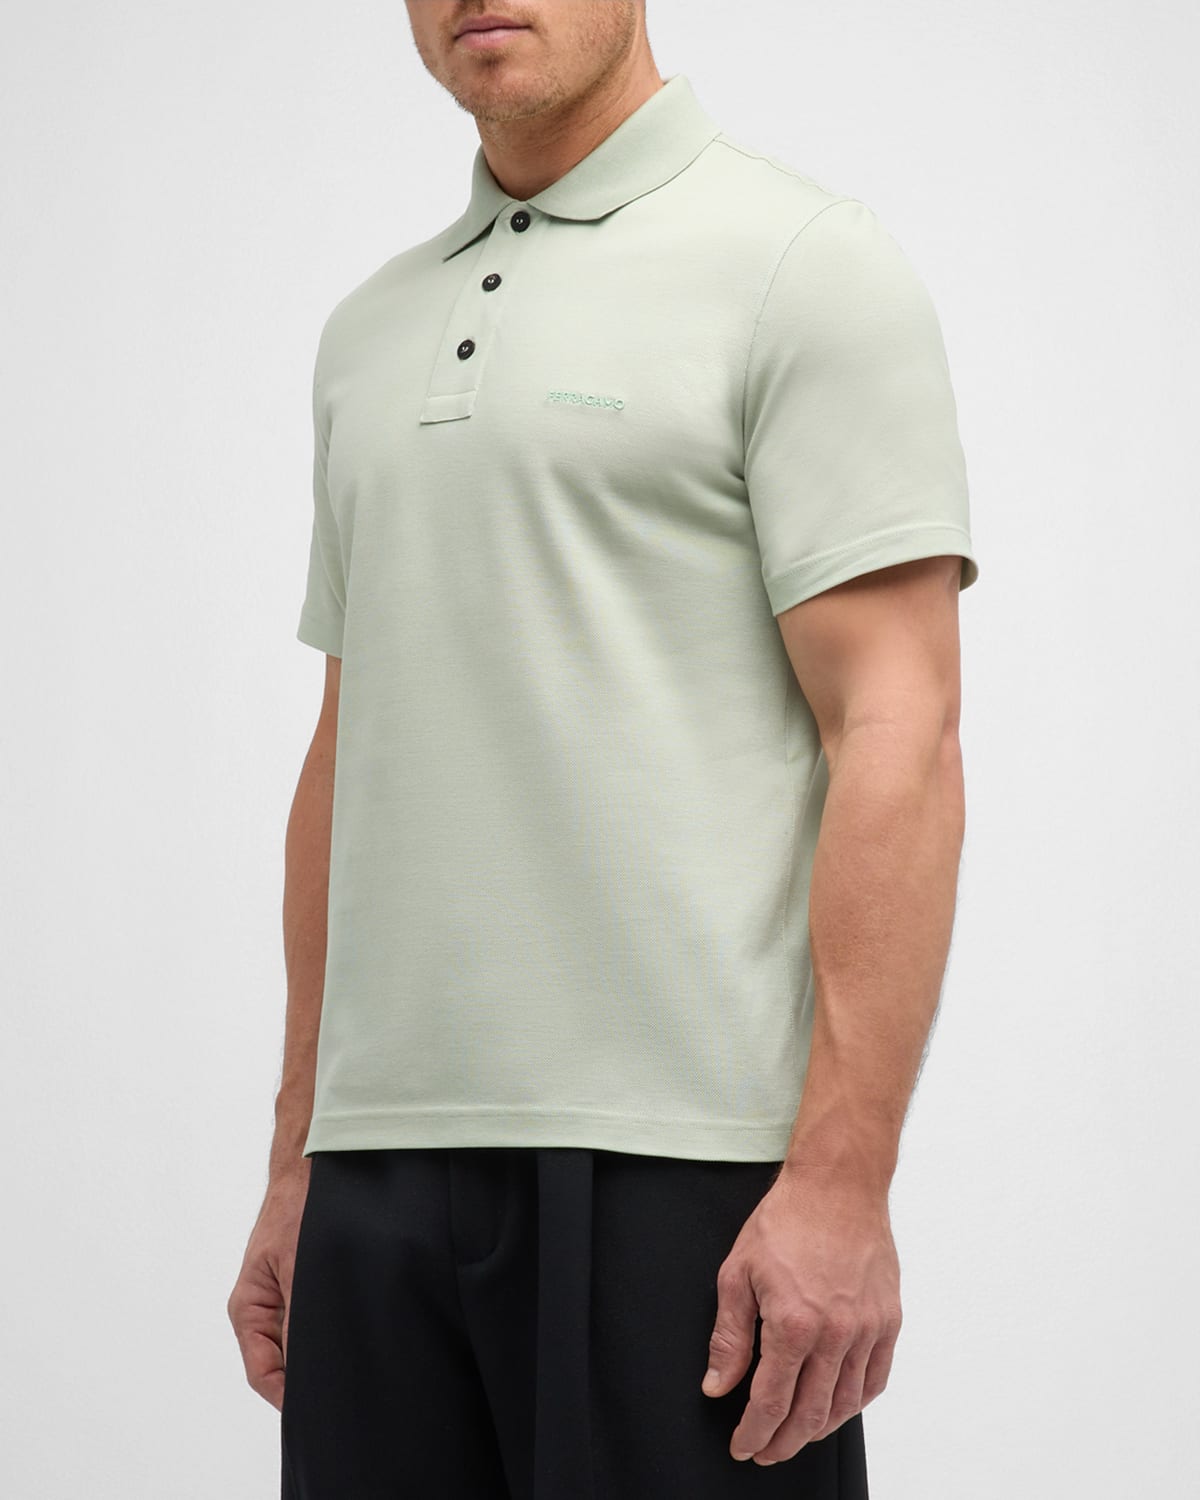 Men's 3-Button Pique Polo Shirt